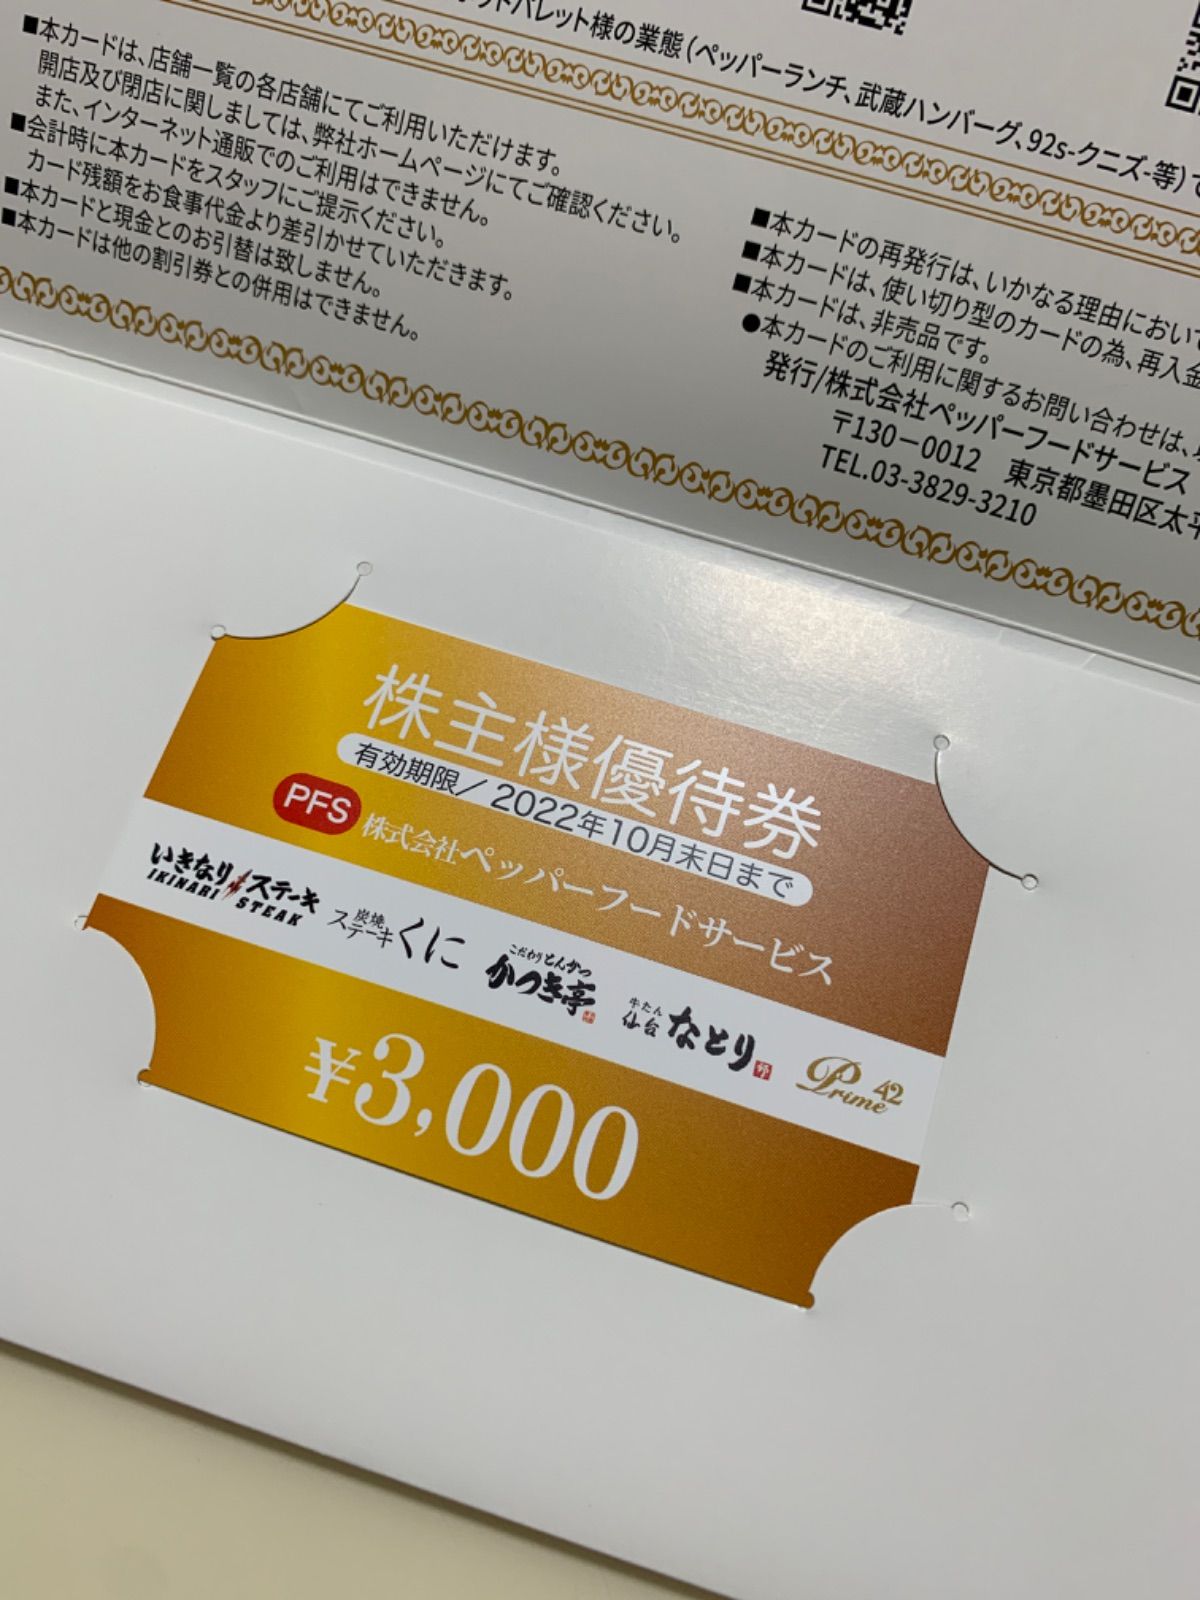 ペッパーフードサービス株主優待券¥3000分